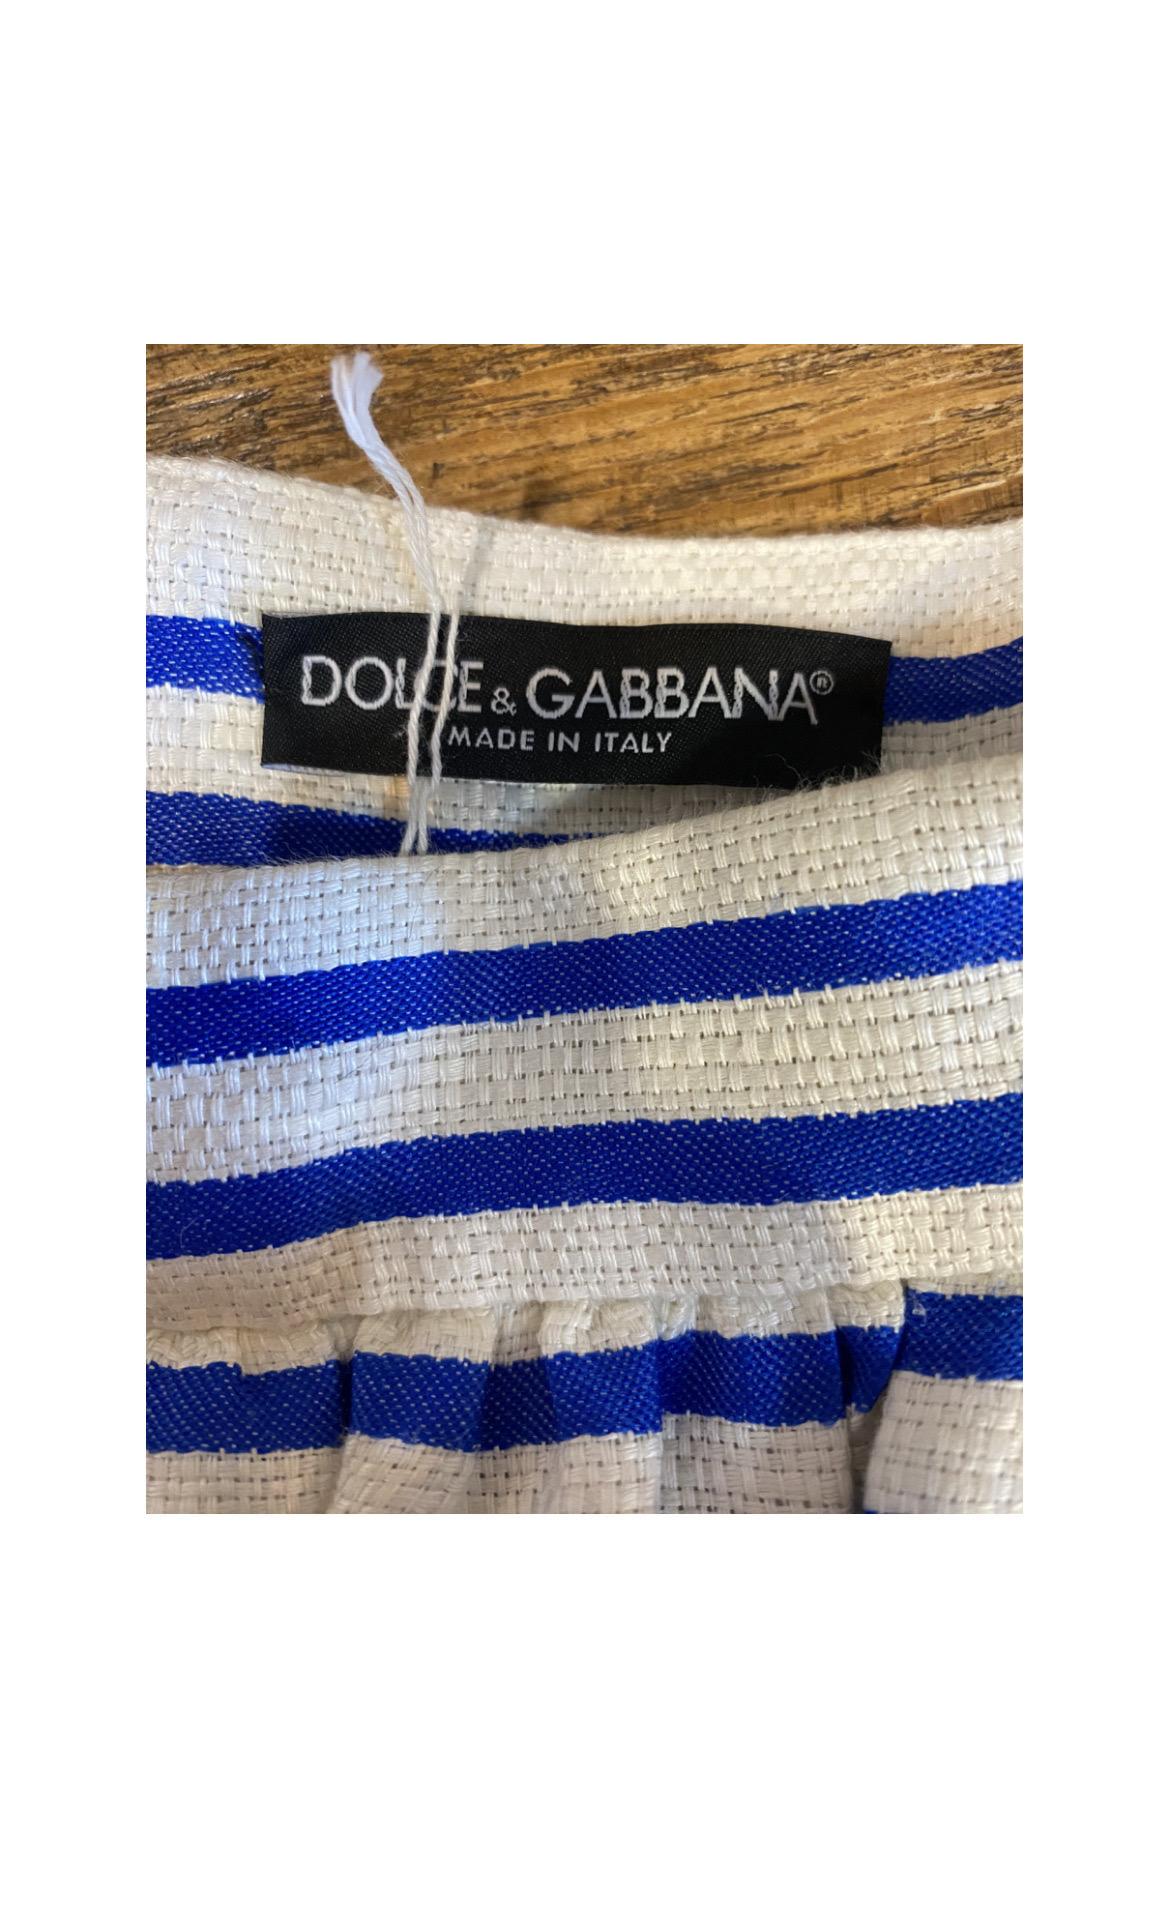 Women's or Men's Dolce&Gabbana linen skirt.